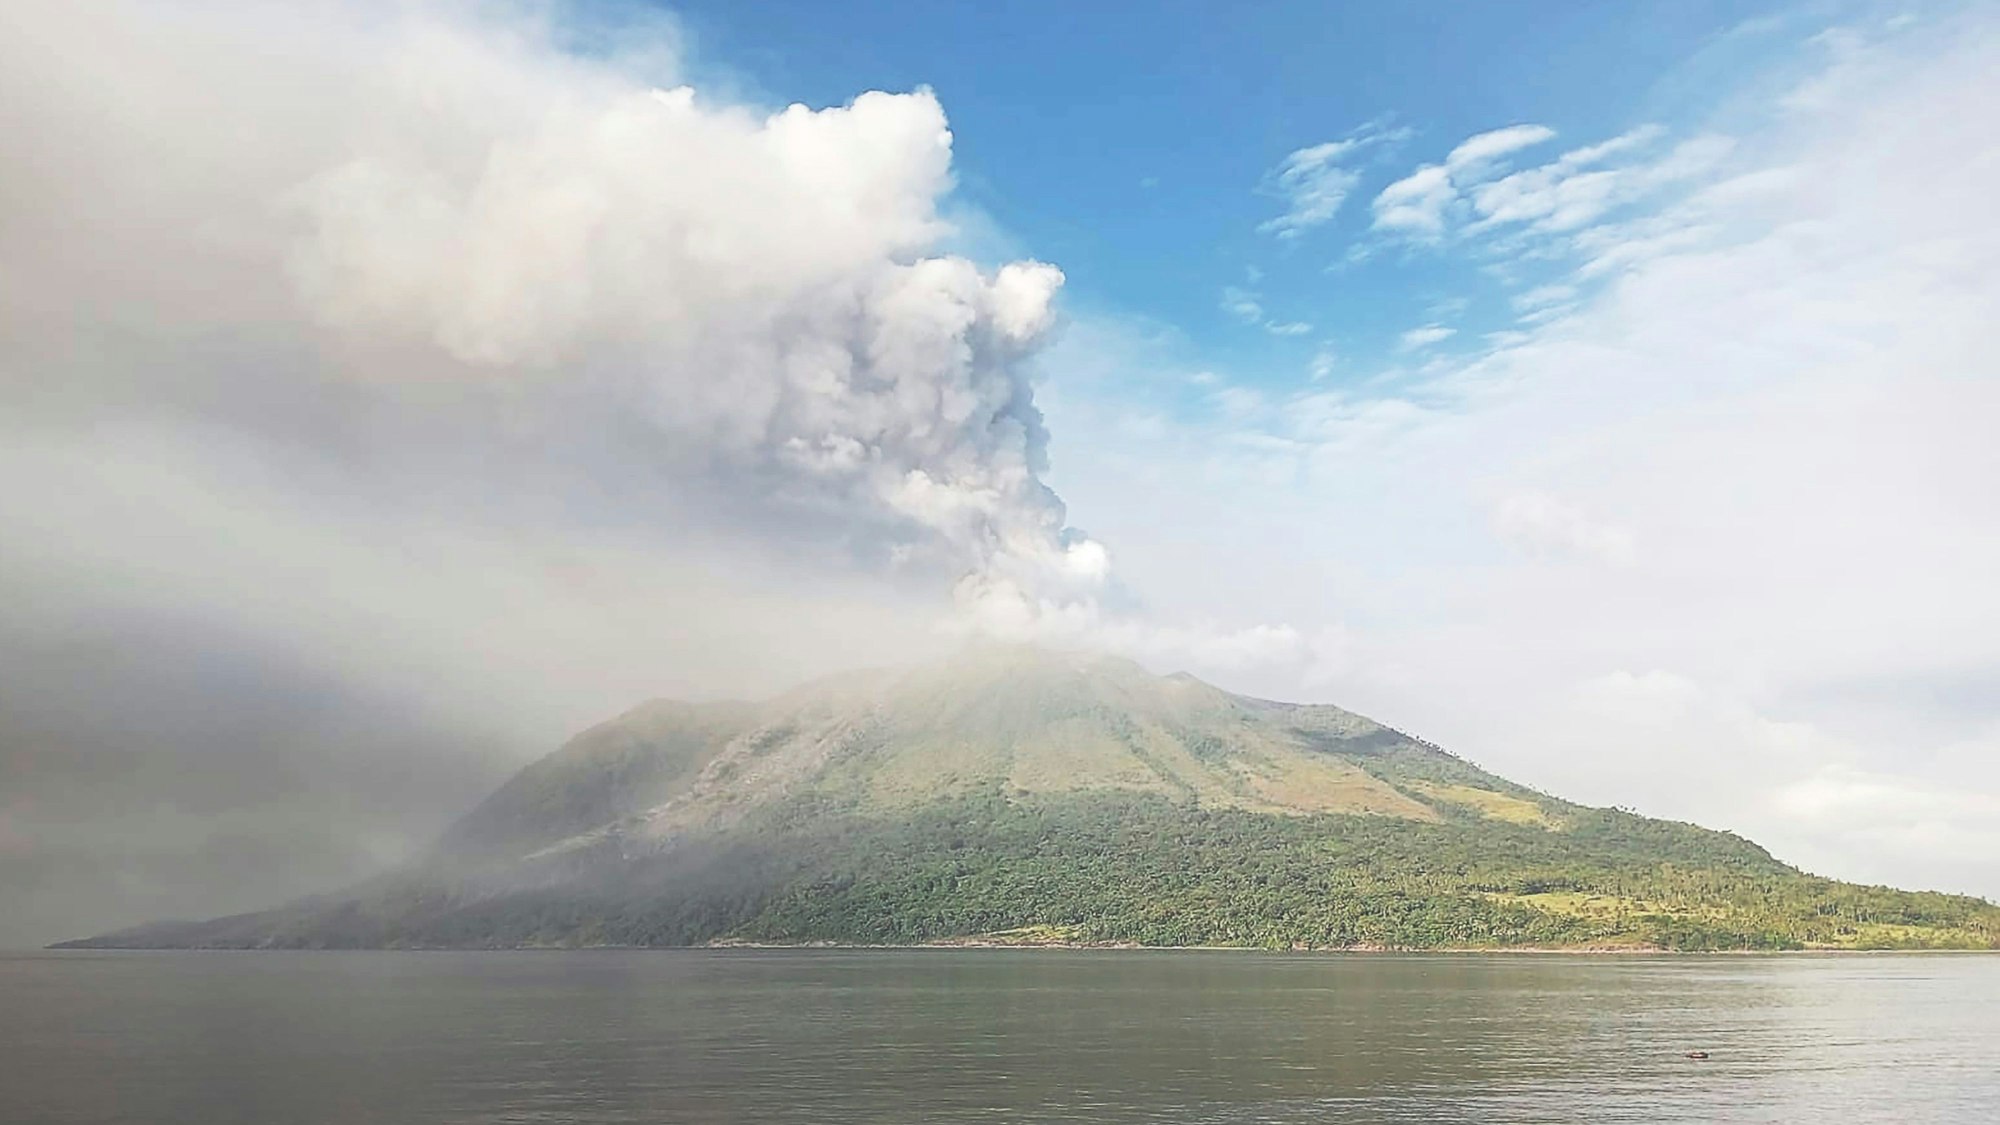 Der Vulkan Ruang ist während eines Ausbruchs von Asche auf der Insel Tagulandang zu sehen. (Symbolbild)